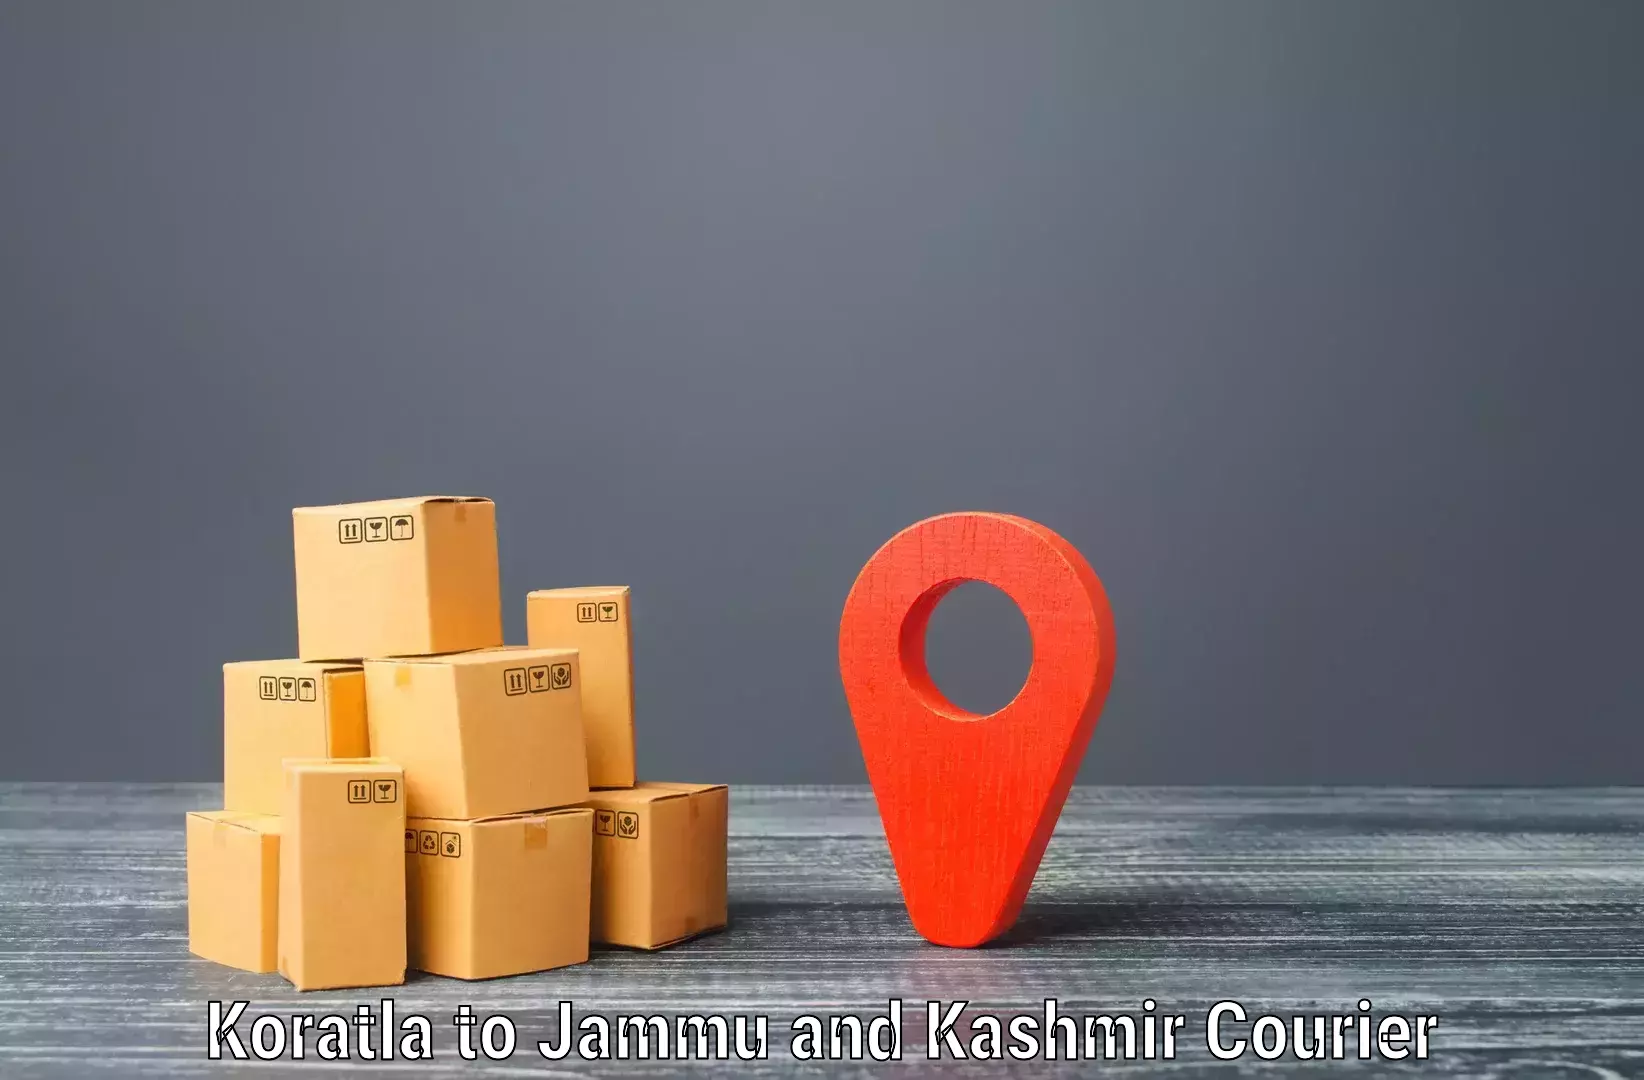 Rapid freight solutions Koratla to University of Jammu